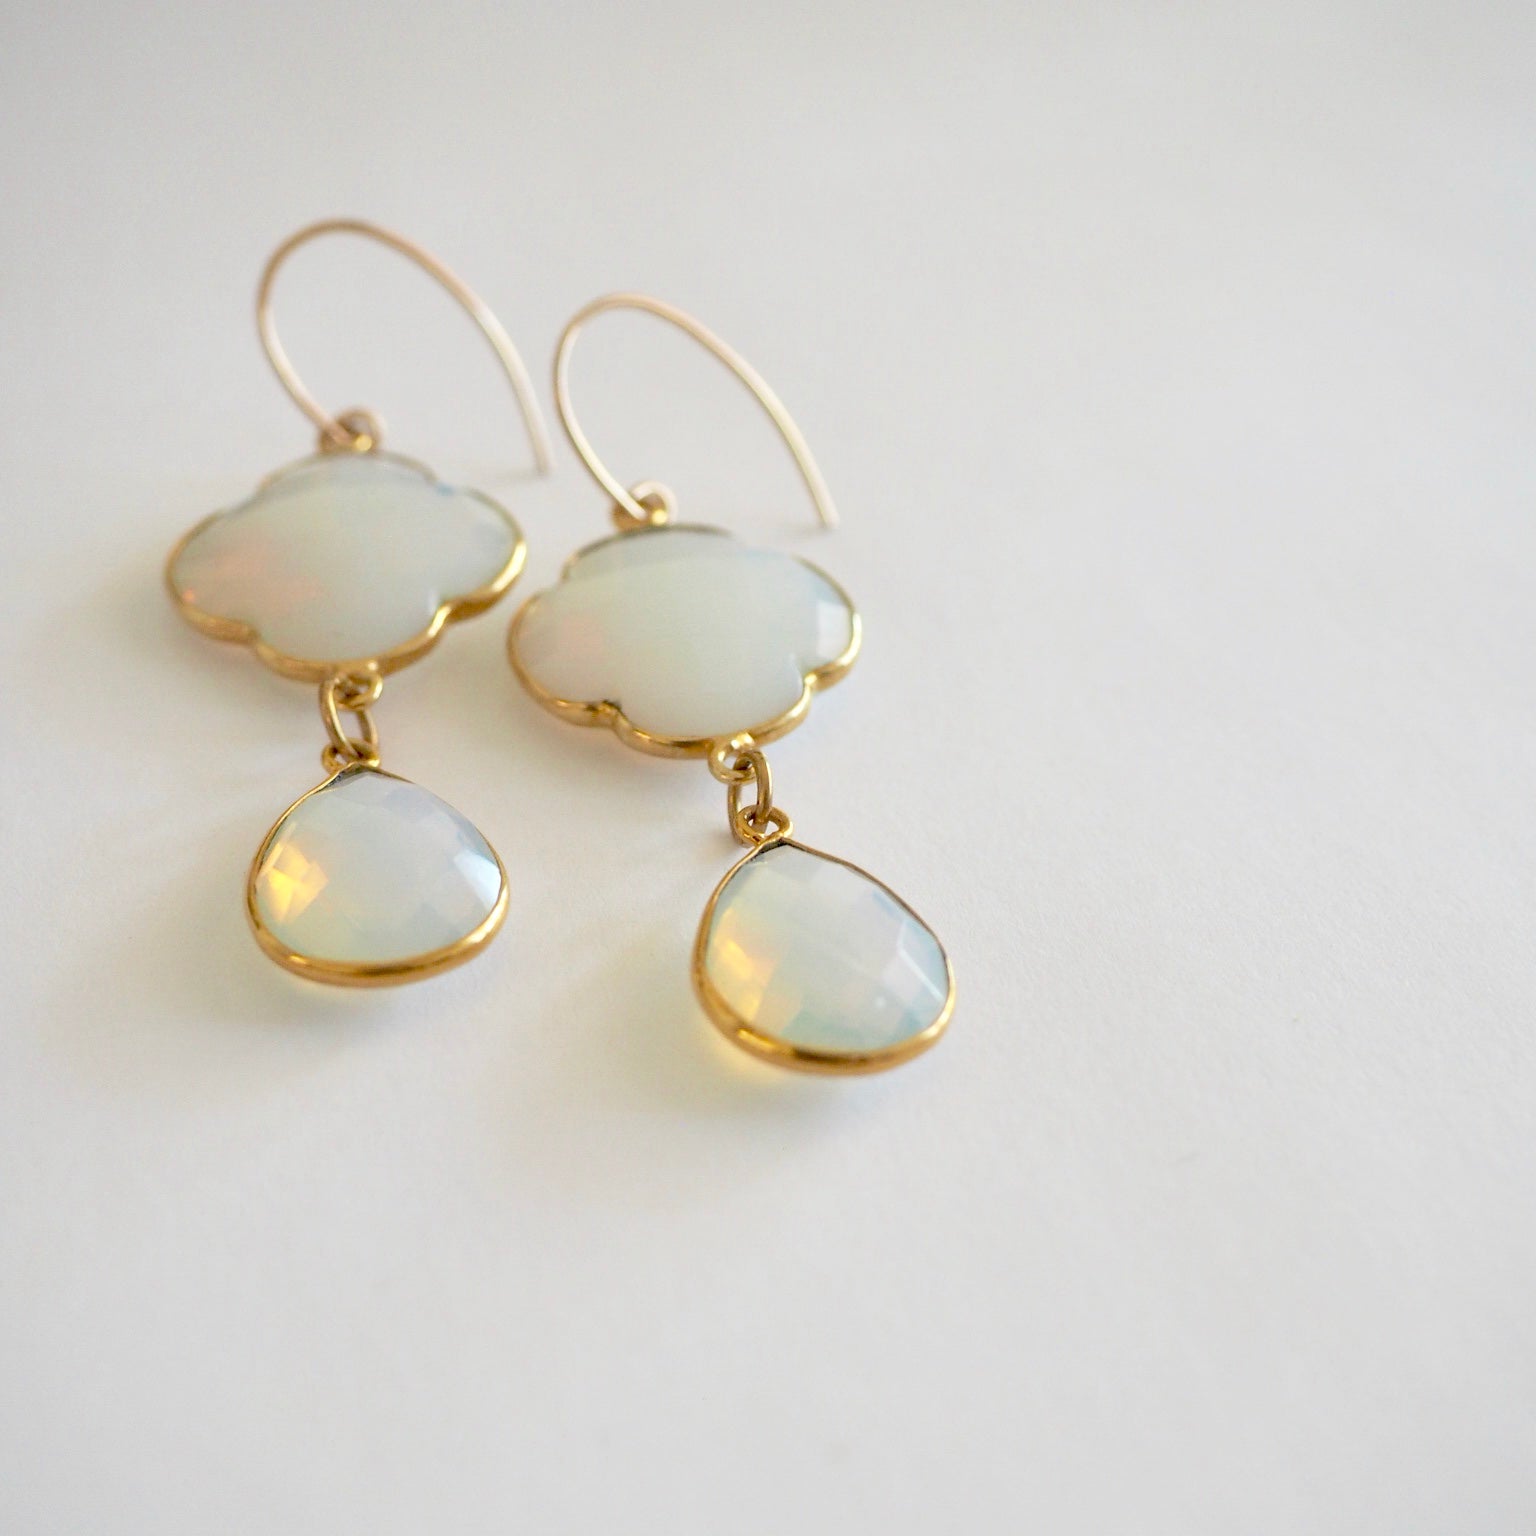 White Opal Chalcedony 14K gold filled earrings by Wallis Designs